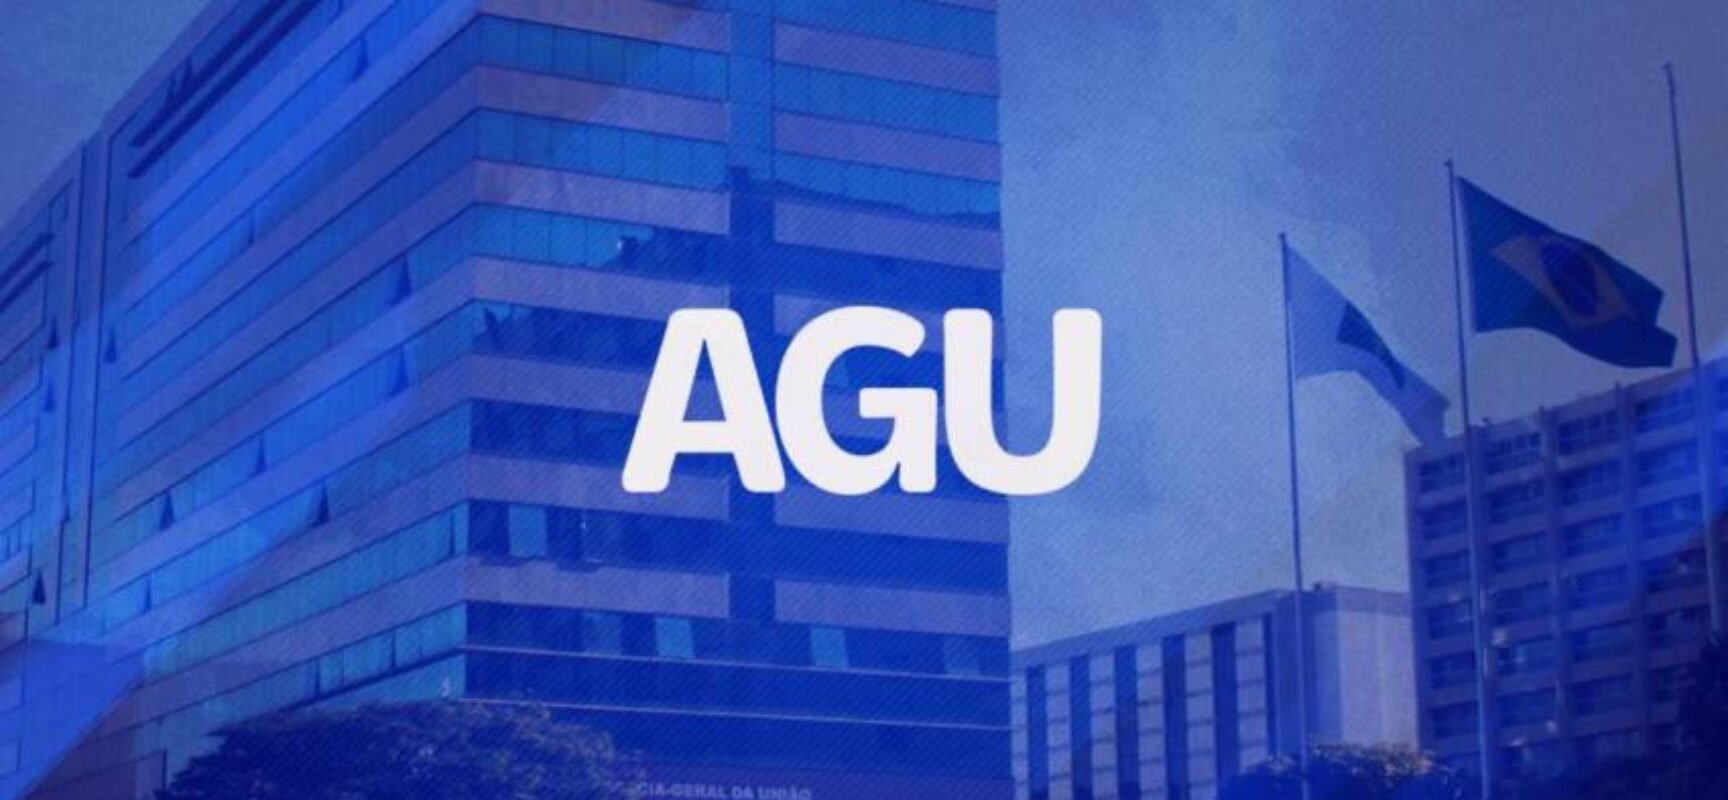 AGU publica editais de concurso com 300 vagas para formados em direito